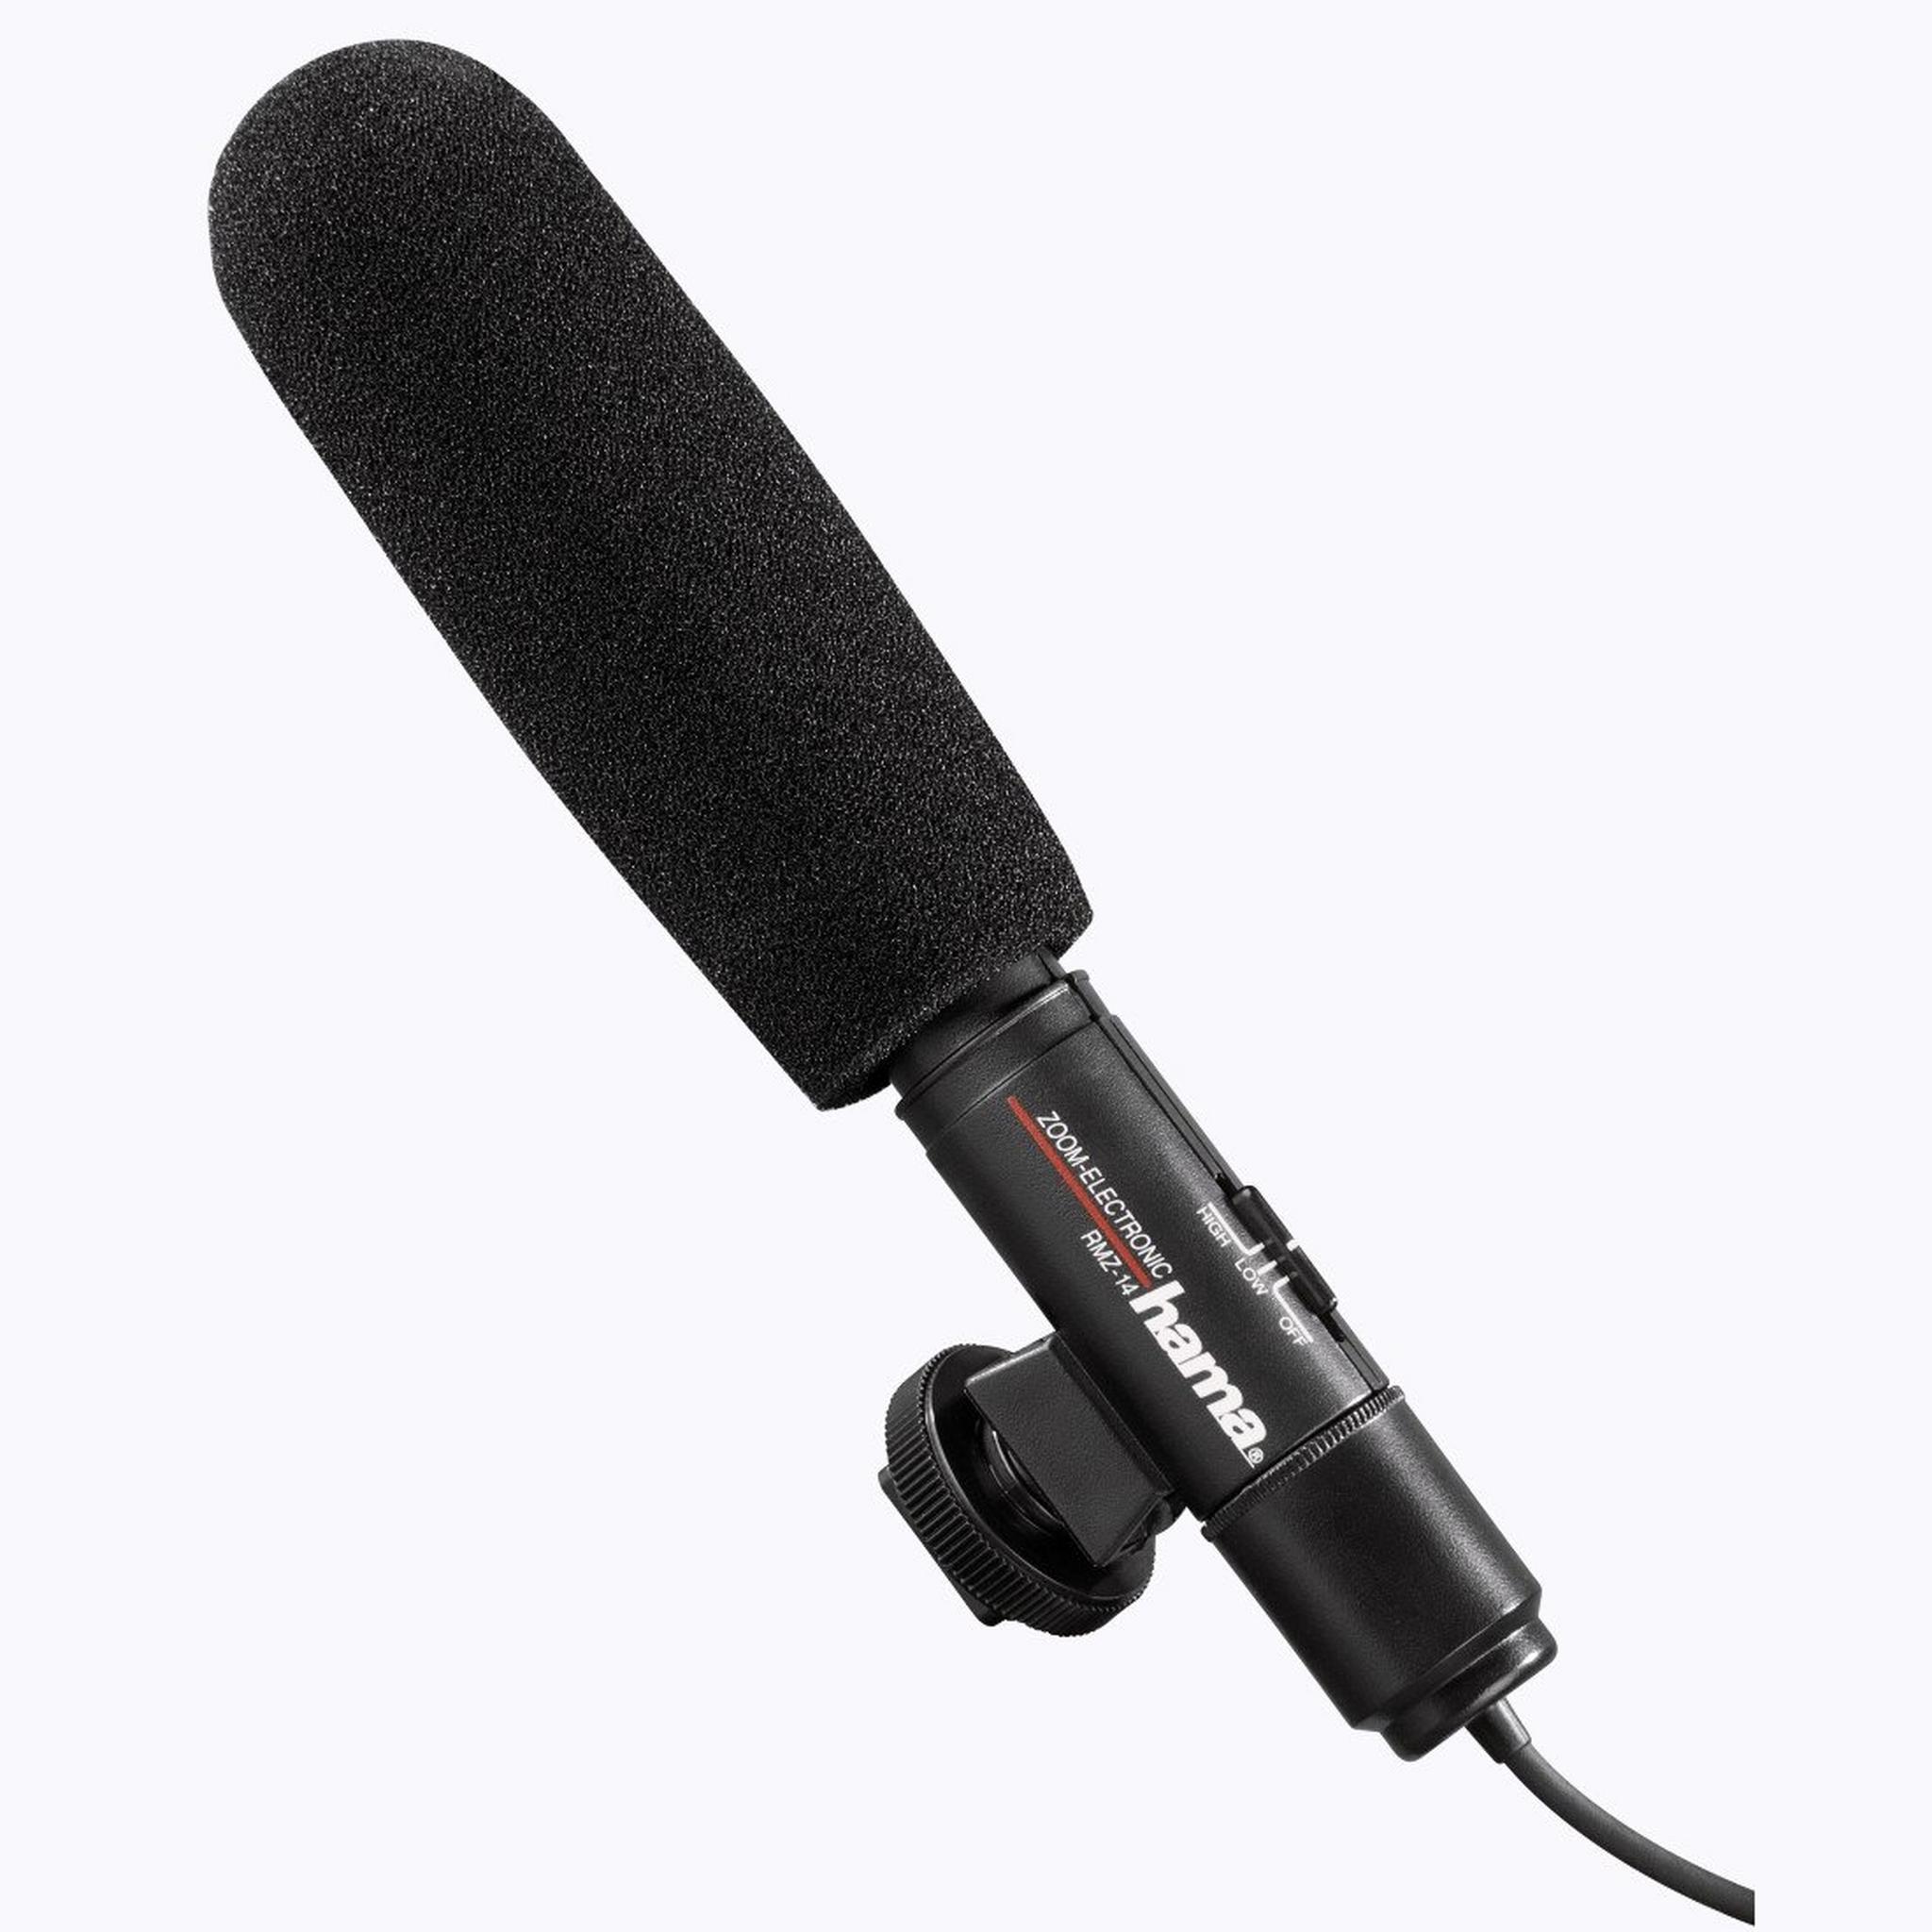 Hama RMZ-14 Stereo Directional Microphone